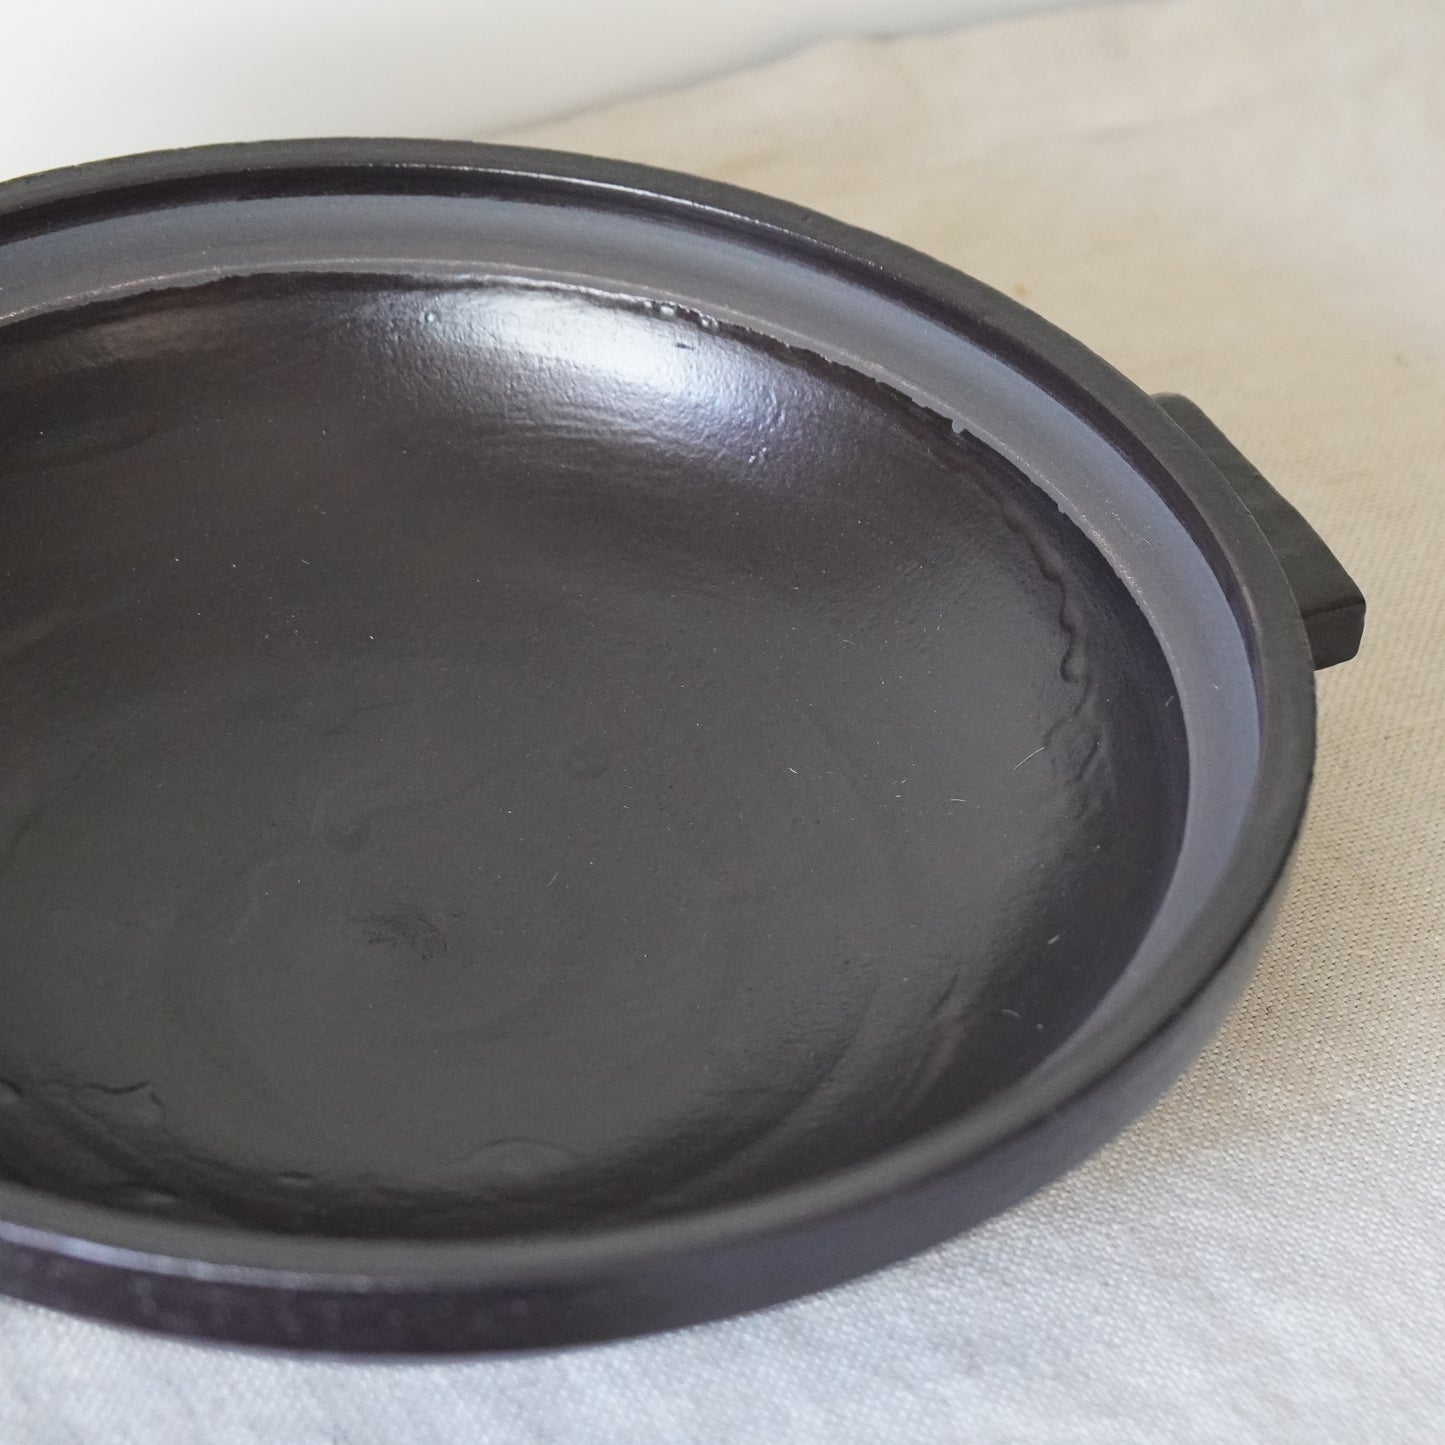 オリジナル土鍋